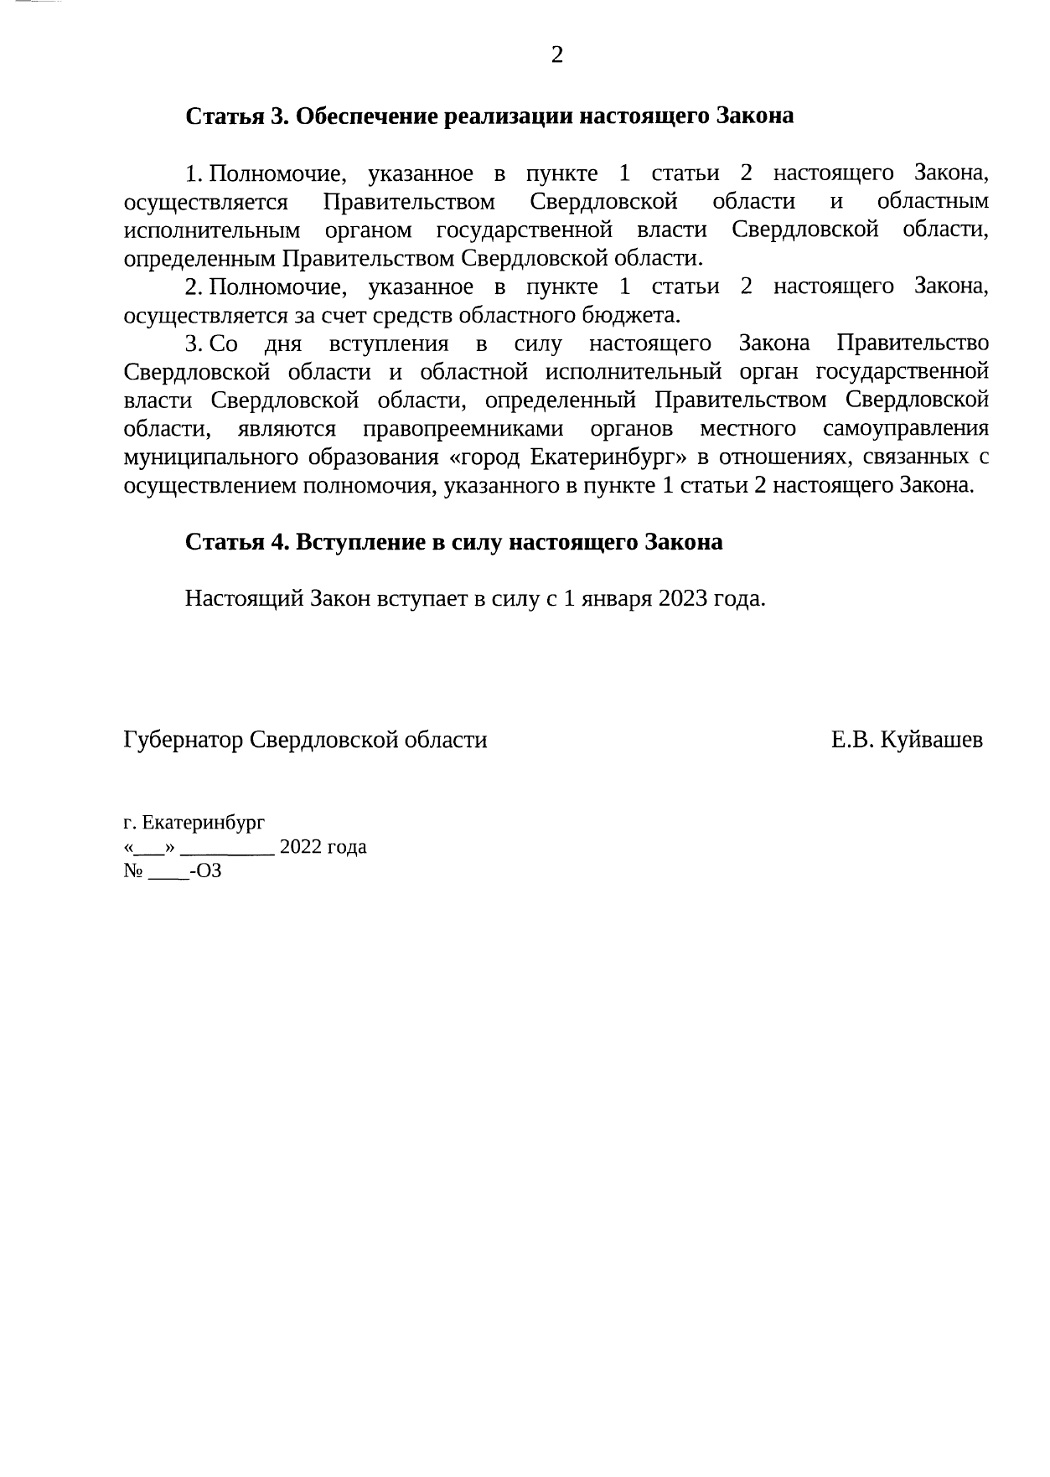 Полномочия по утверждению генплана Екатеринбурга могут перейти к областному правительству